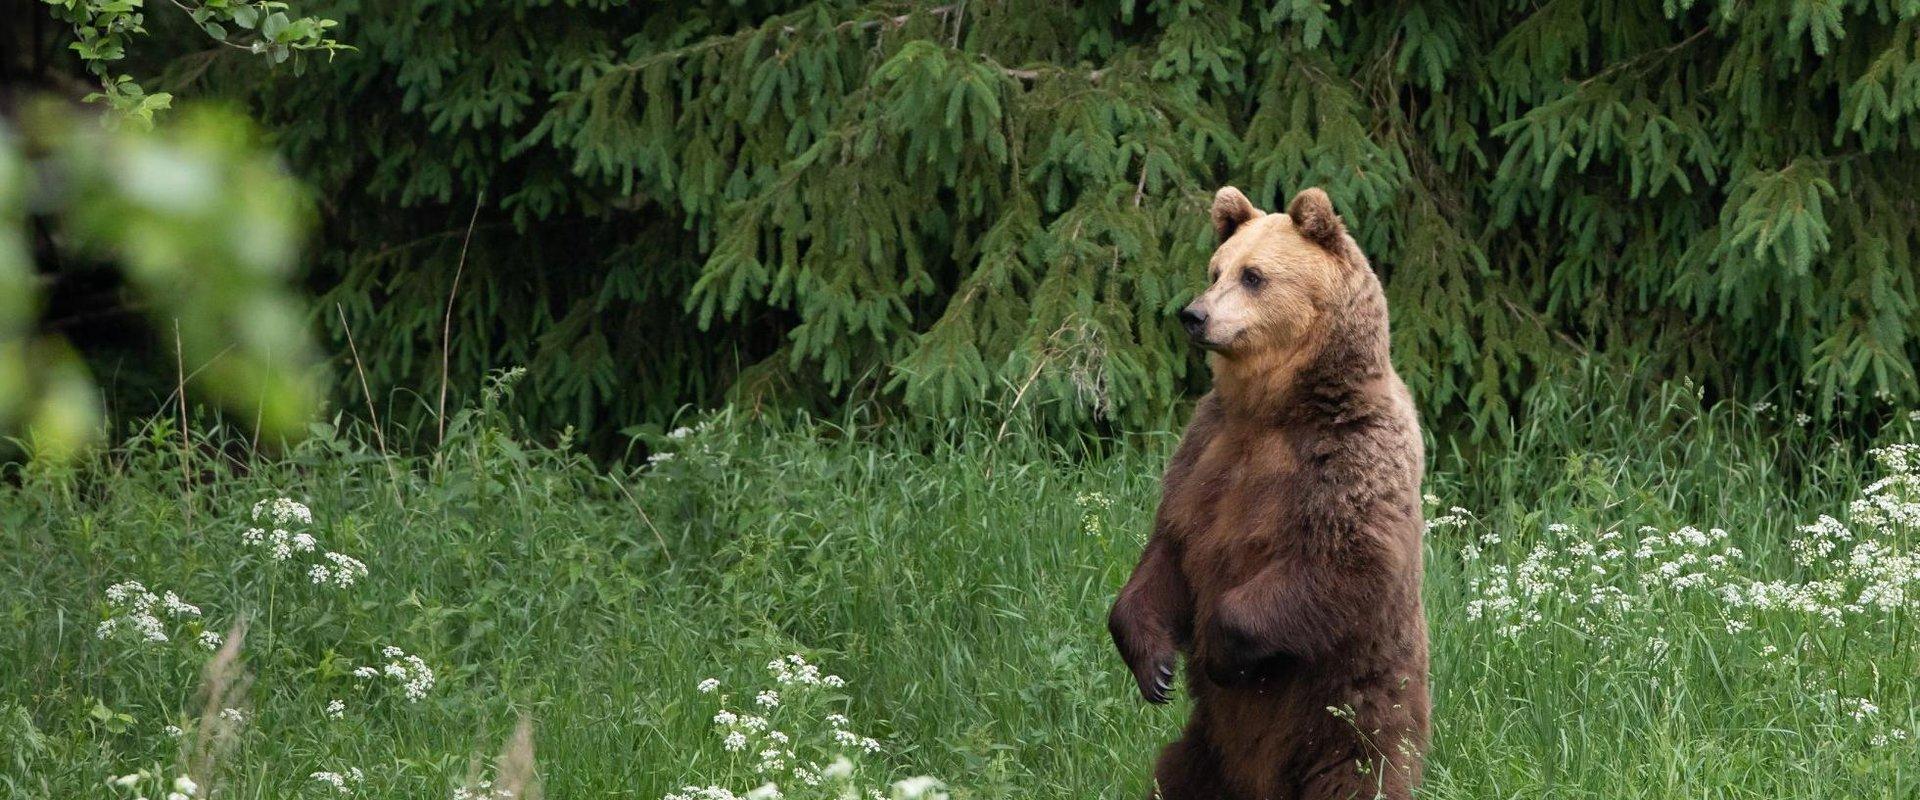 Haben Sie schon einmal einen wilden Bären mit eigenen Augen gesehen? Hier besteht genau dazu die Möglichkeit! Am wahrscheinlichsten ist es, Bären zu s